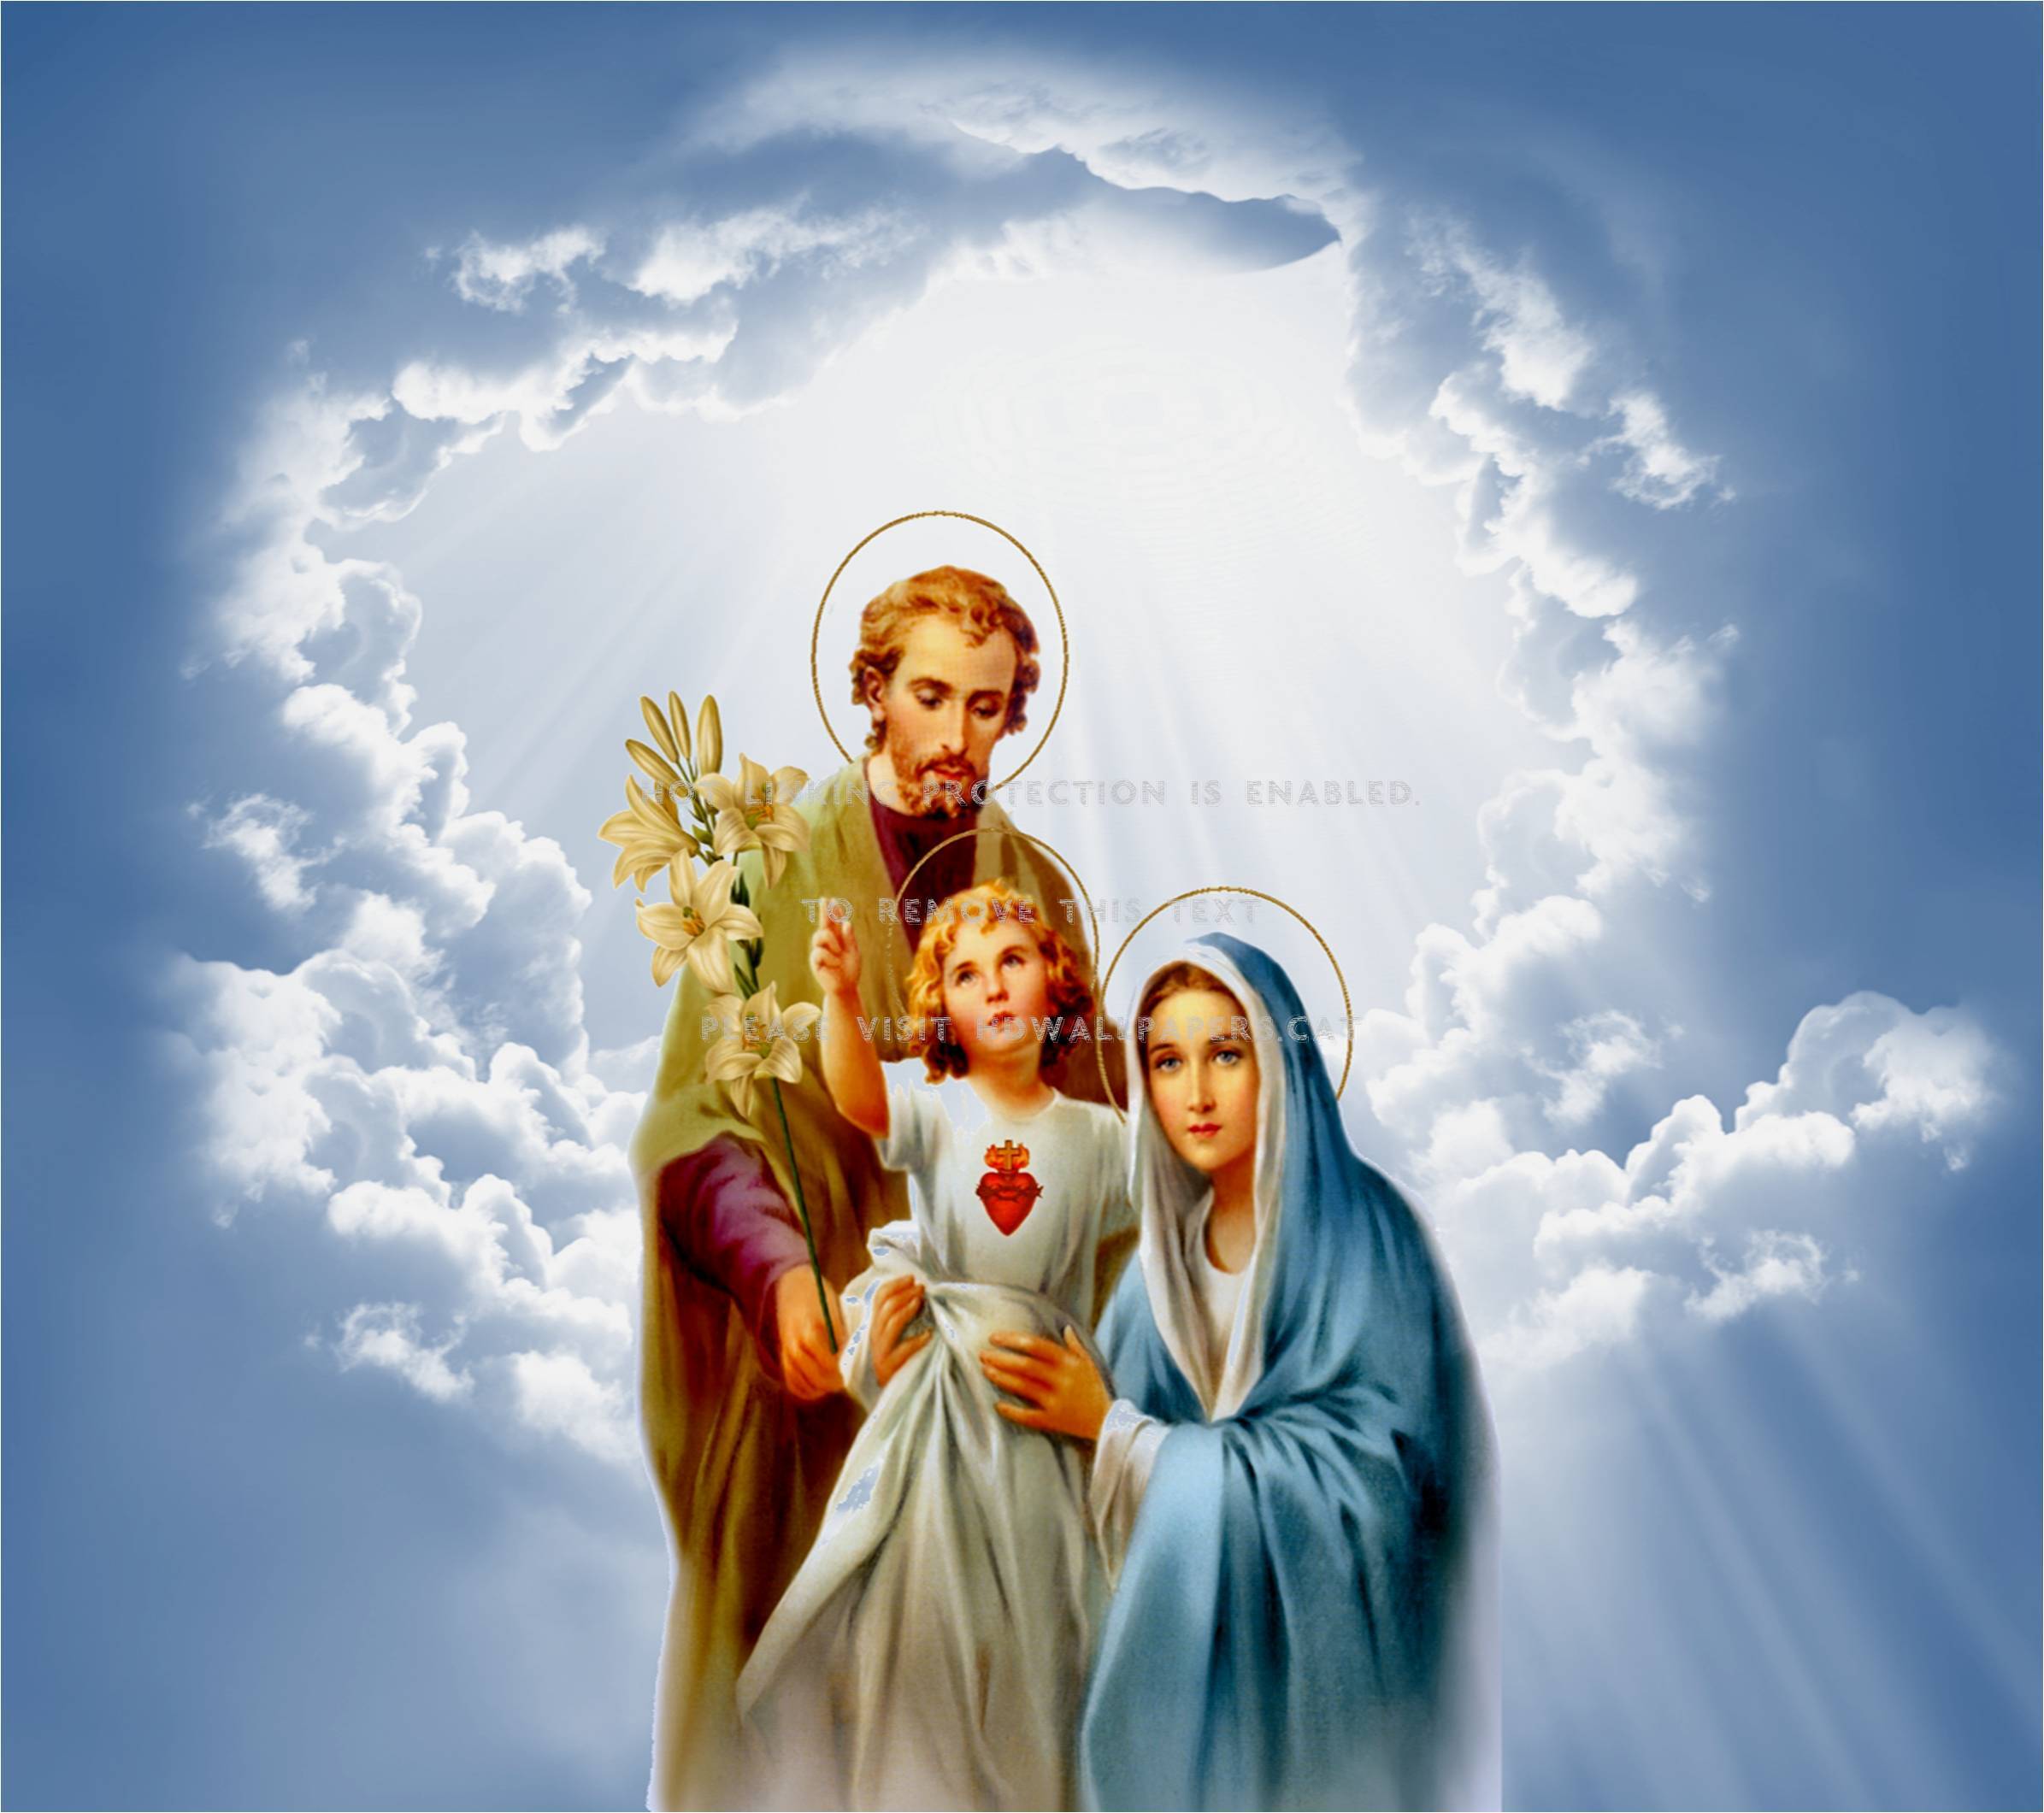 holy family saint joseph virginmary jesus